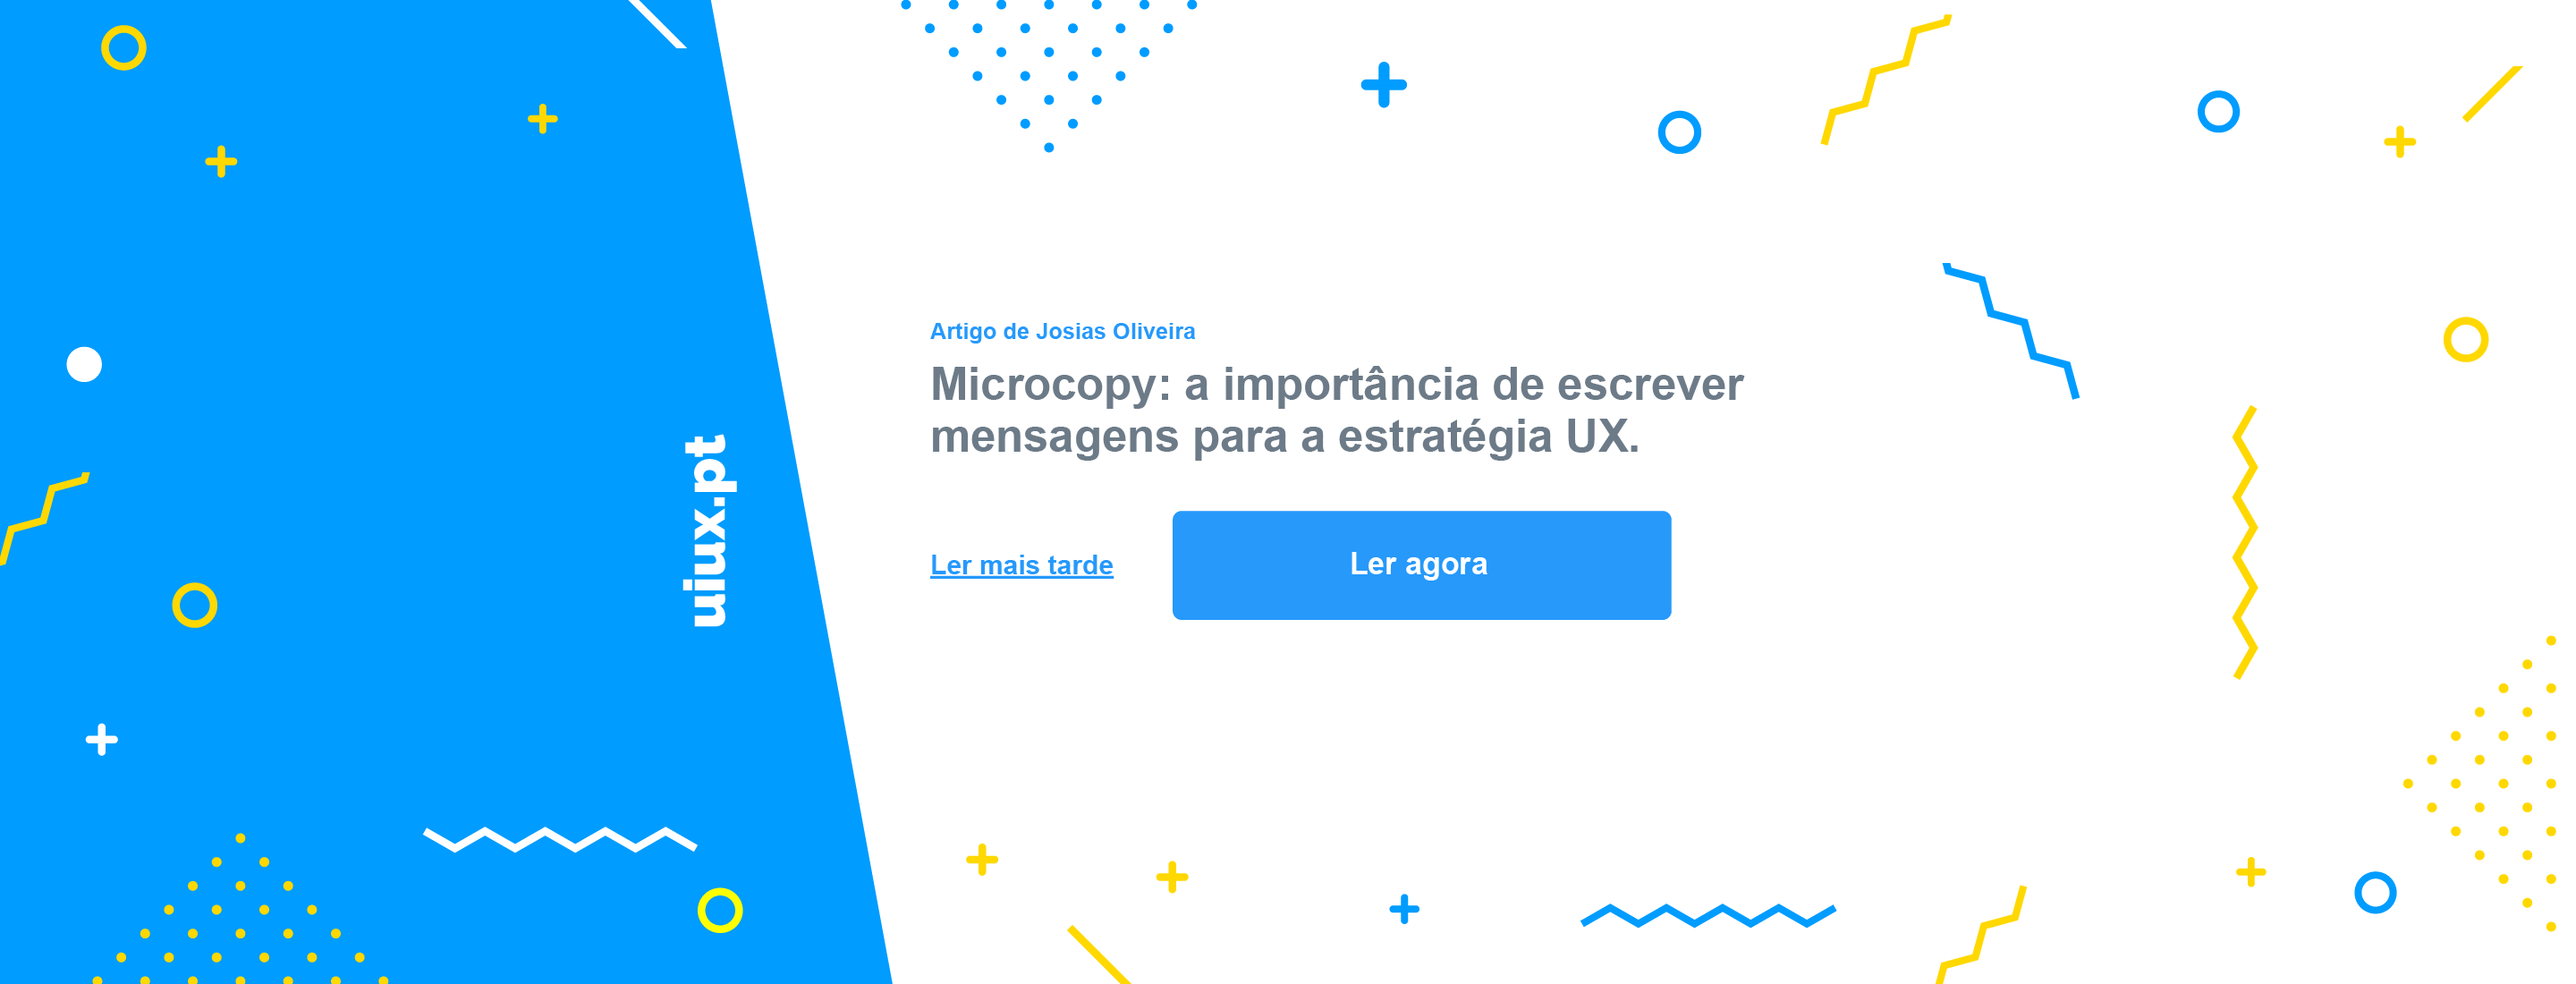 Microcopy: a importância de escrever mensagens para a estratégia UX